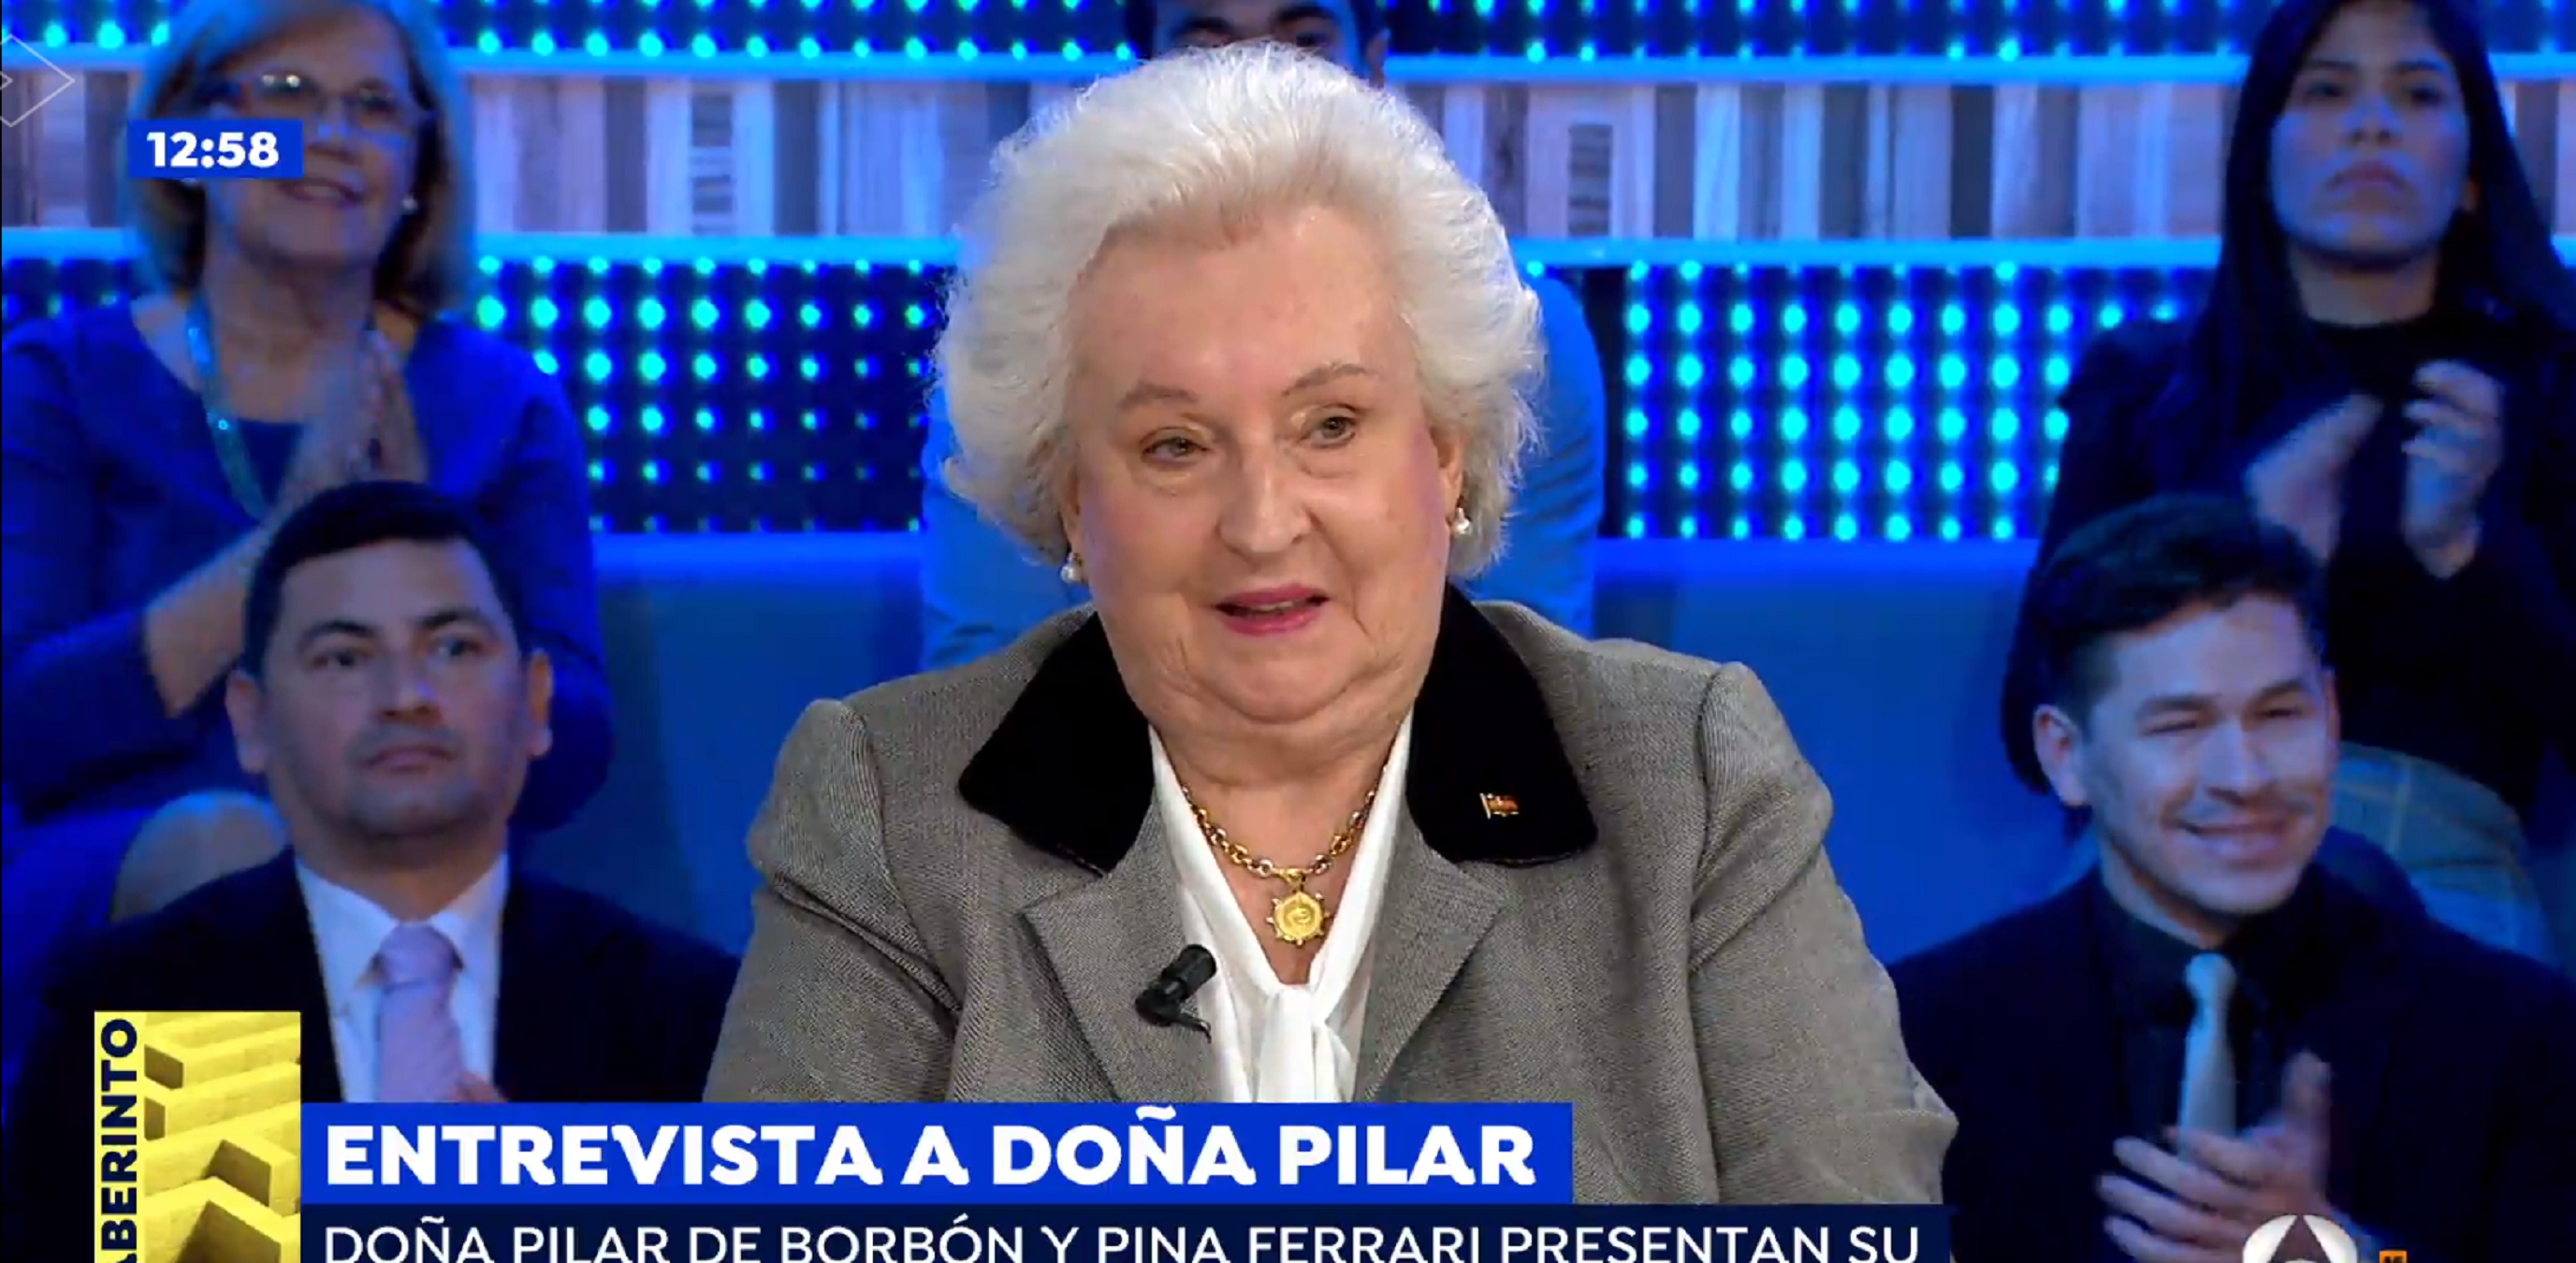 Pilar de Borbón habla del divorcio en TV: "Con Cristina no hablamos de Iñaki"